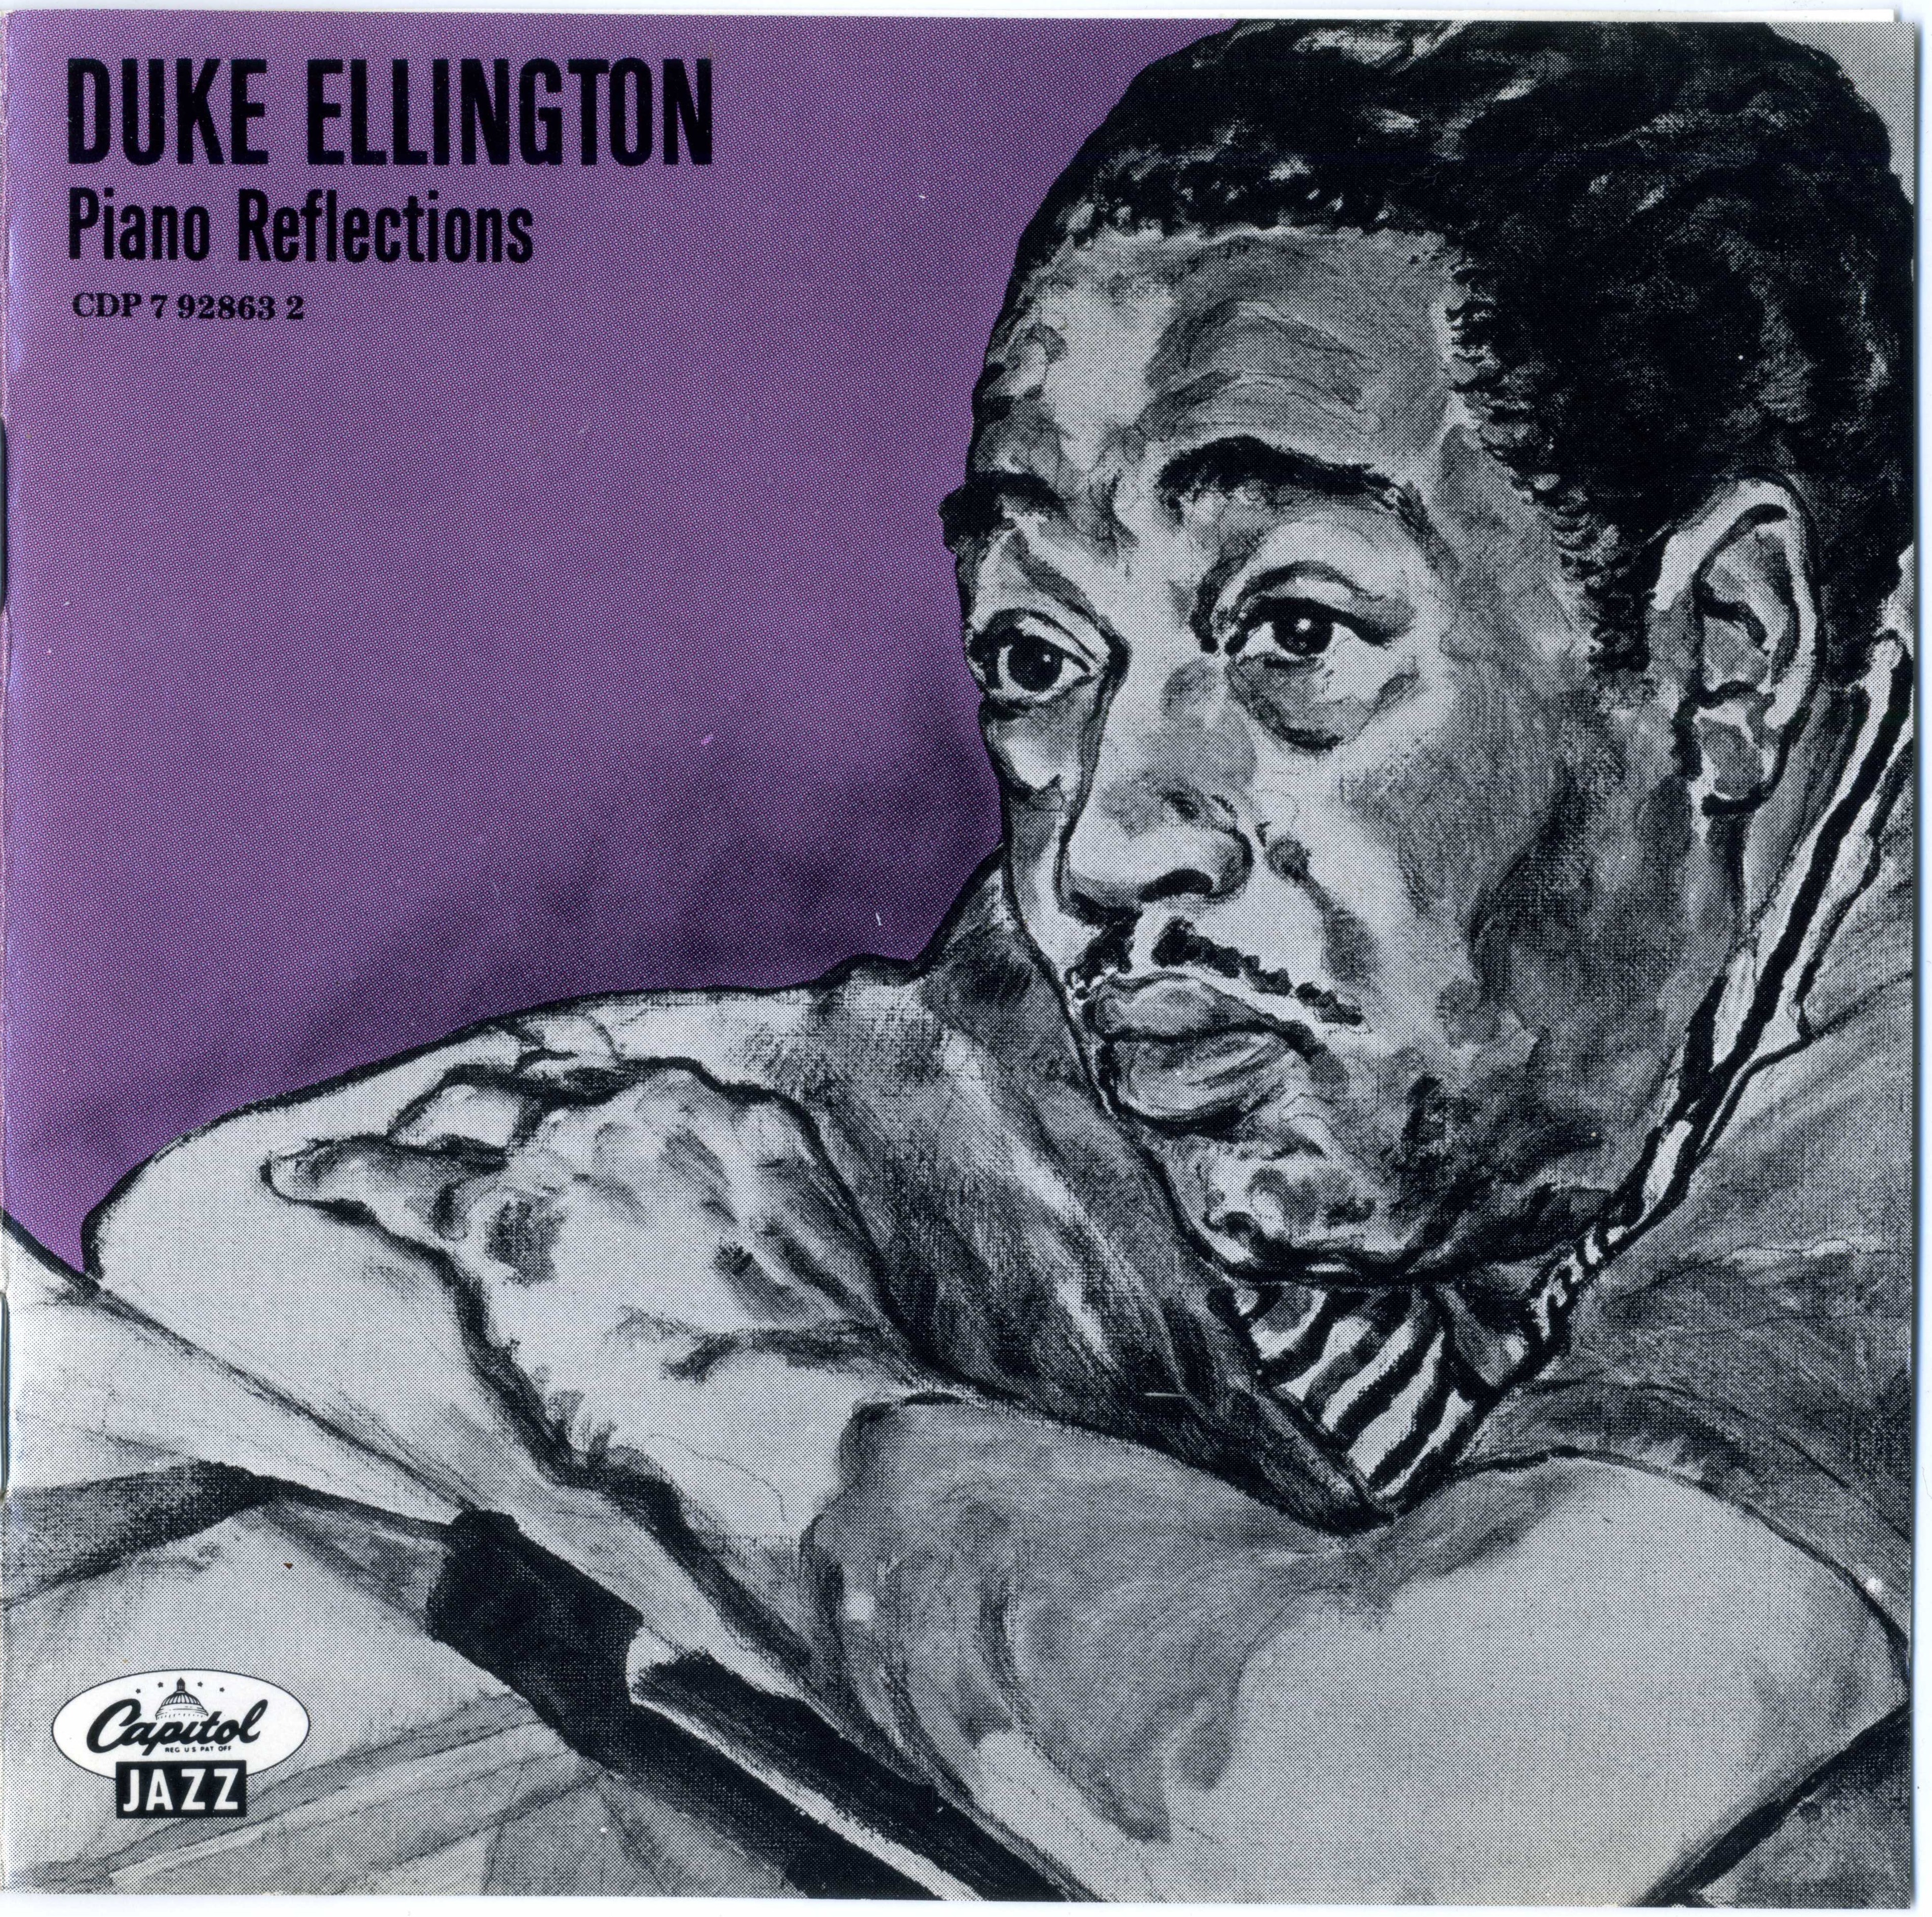 Ethan Iverson, GoGo Penguin, Duke Ellington & More: The Week in